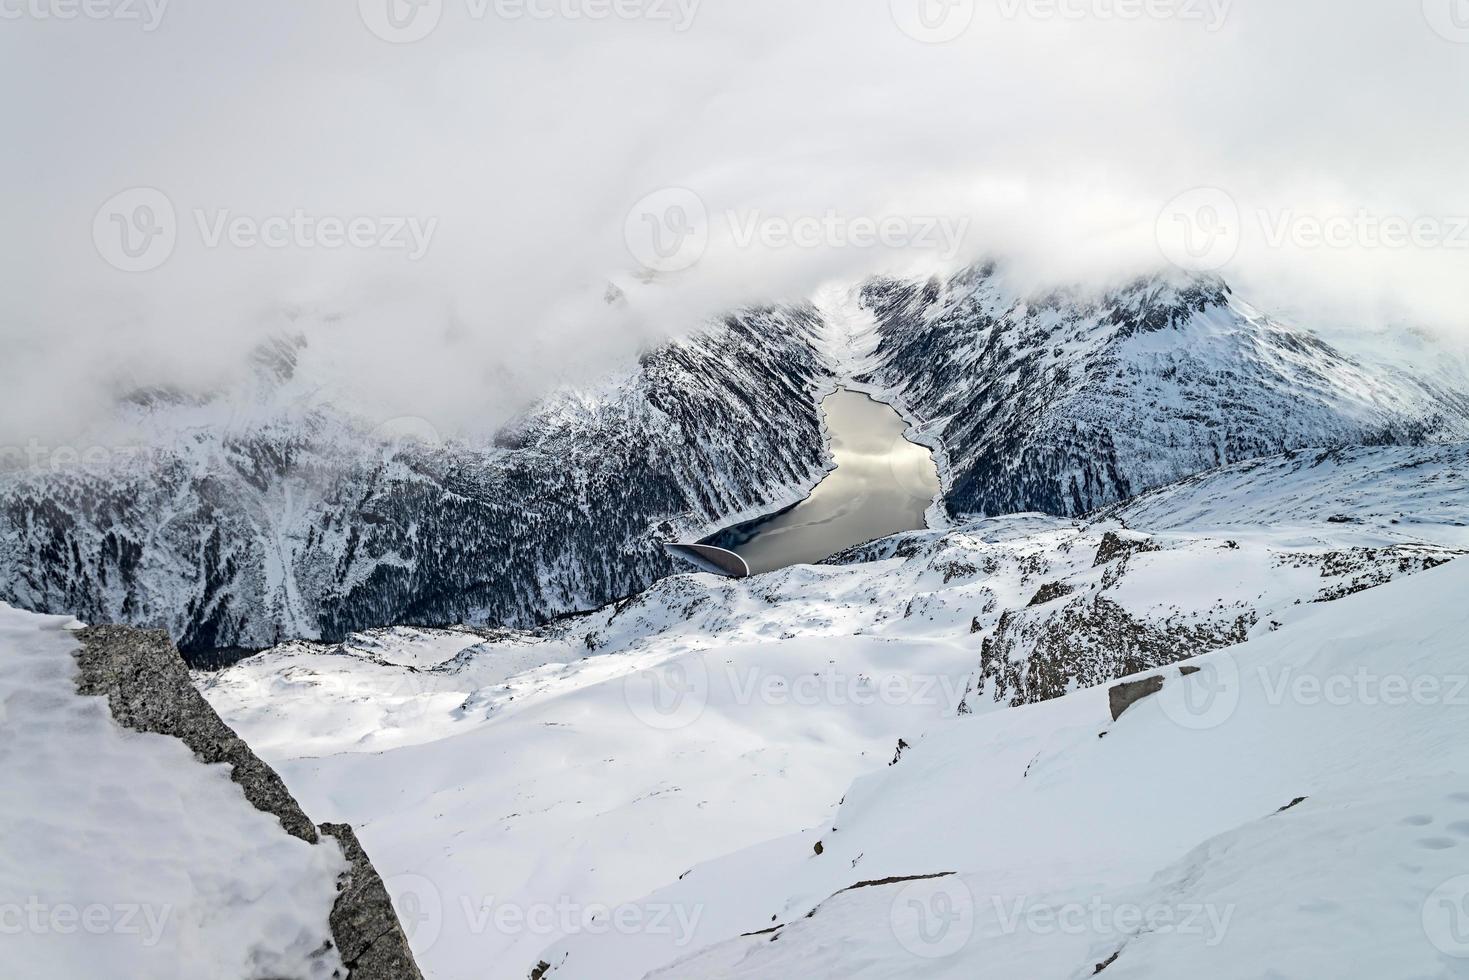 estação de esqui zillertal - tirol, áustria. foto